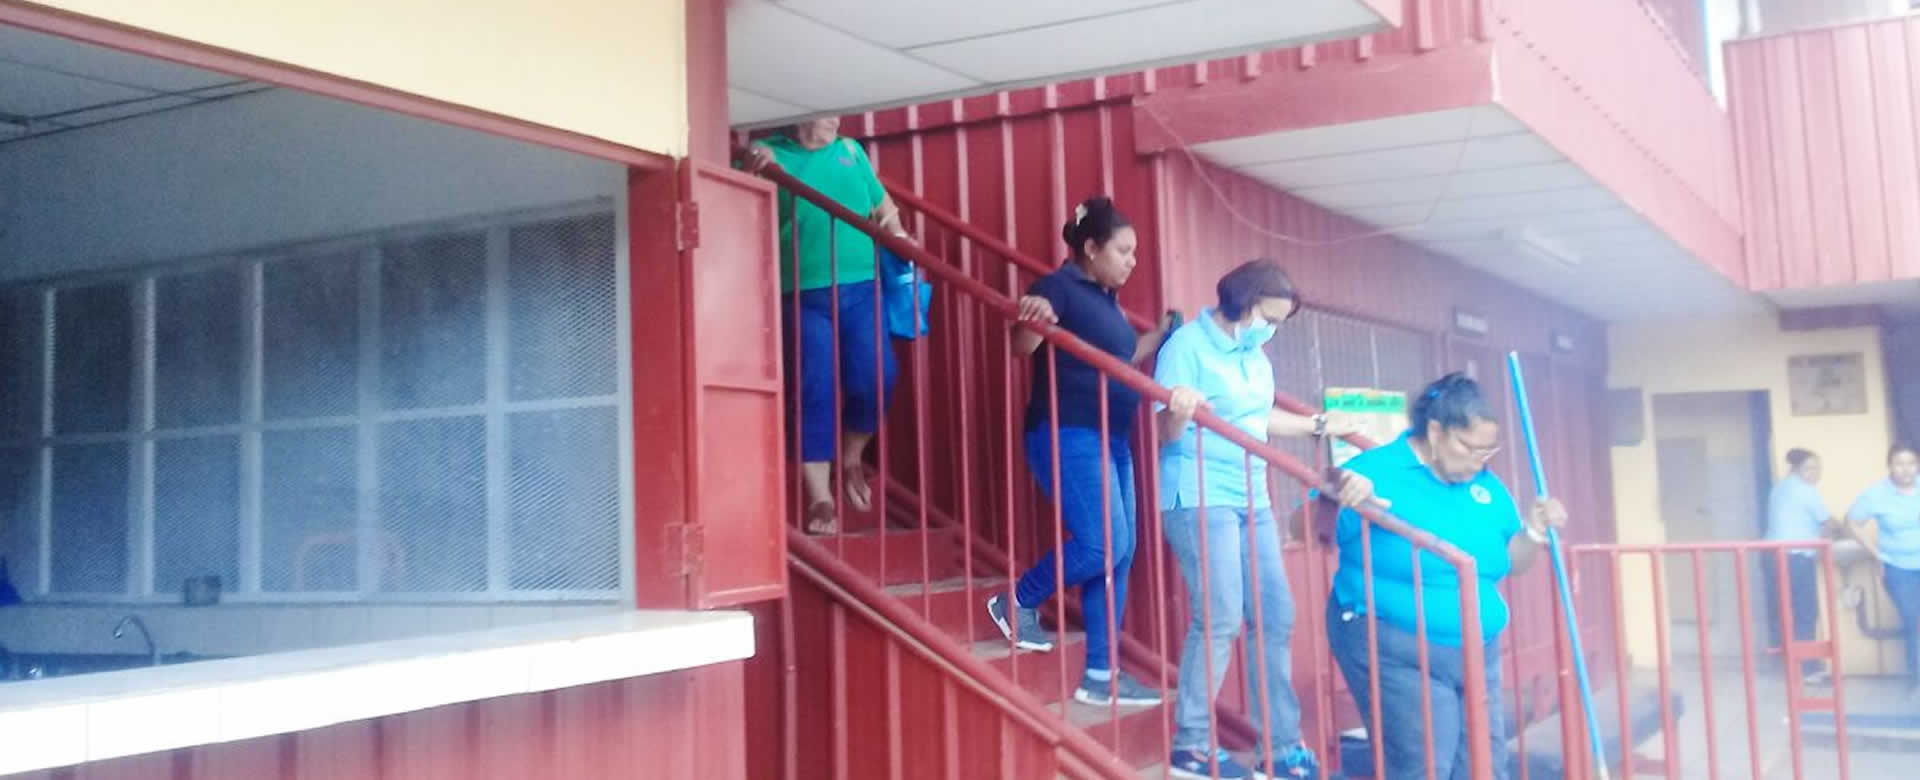 Jornada de fumigación llega al Colegio Padul del Distrito IV de Managua